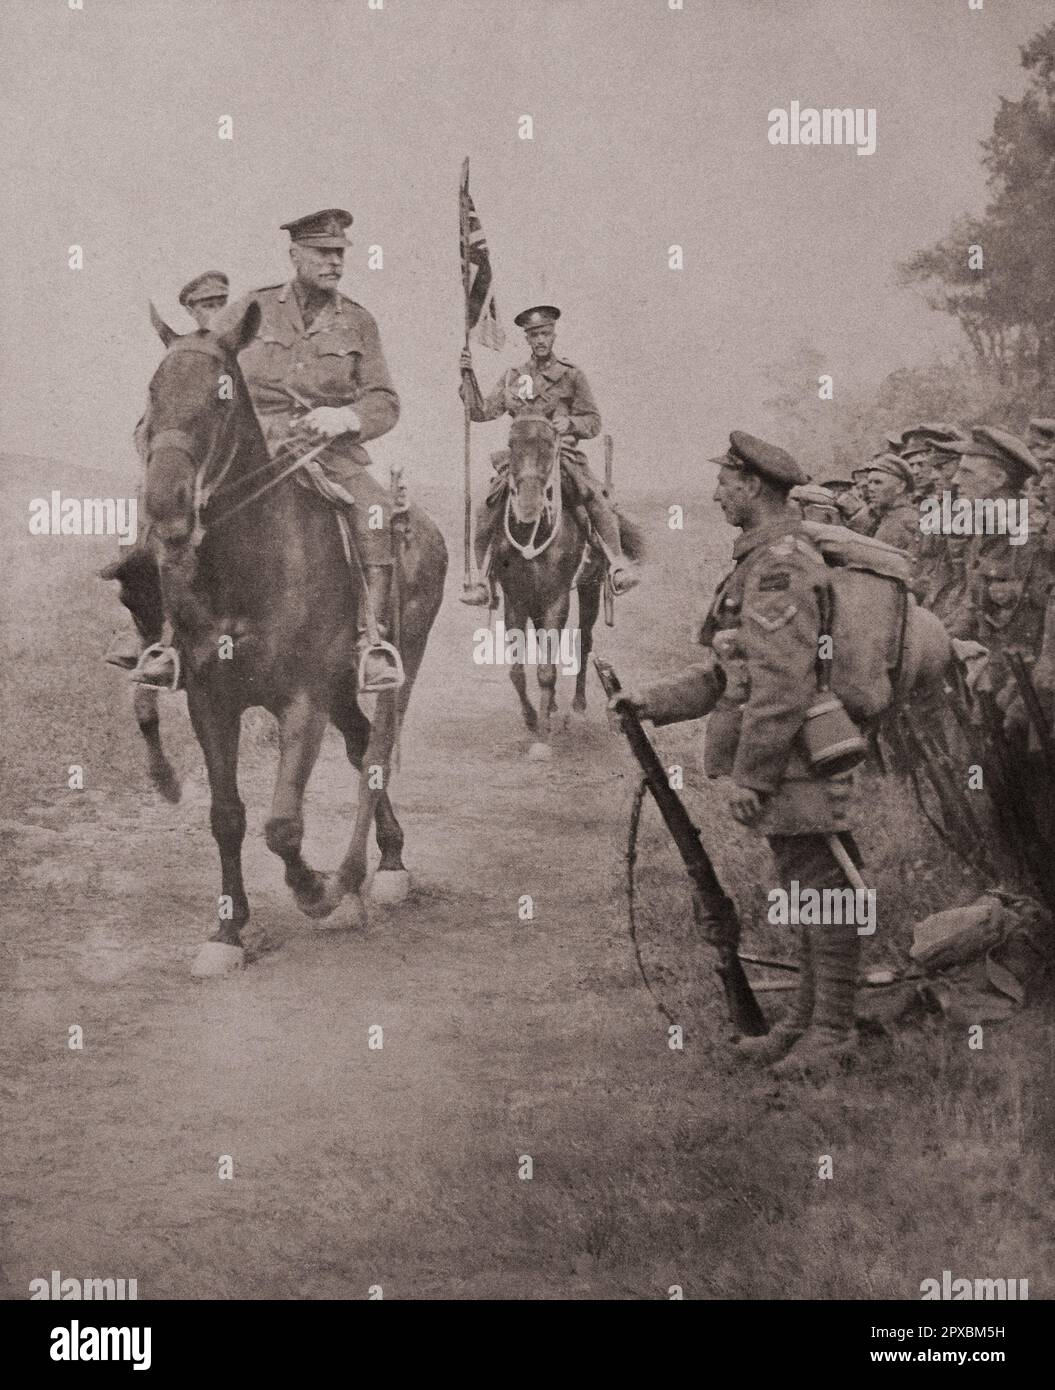 Erster Weltkrieg Die Gewinner von Queant-Drocourt. Marschall Haig kündigte eine Abordnung kanadischer Truppen an, die am 31. August 1918 nach einer epischen Schlacht die Positionen von Queant-Drocourt, nördlich der Scarpe, übernahmen. Stockfoto